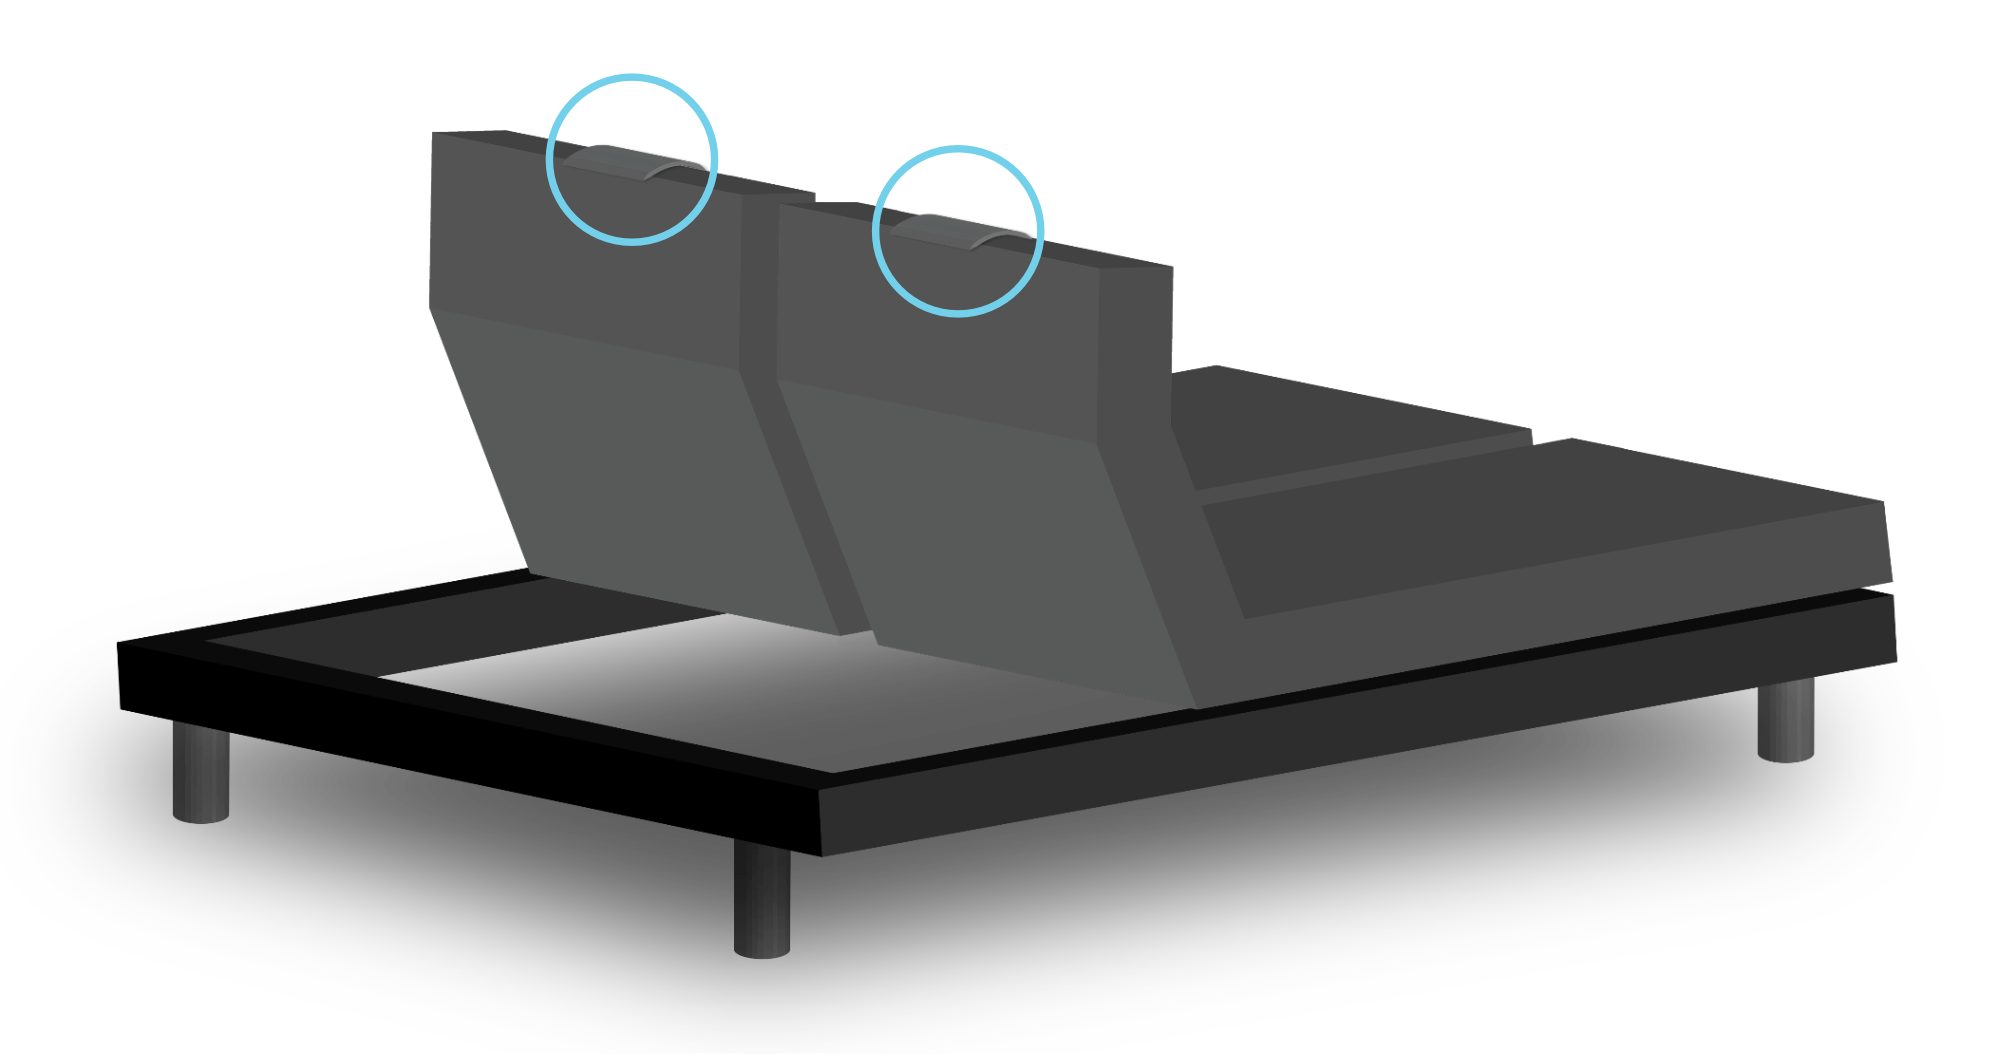 Bild einer verstellbaren Basis mit angehobenem Kopf und Kreisen um die Sensortaschen am Kopf der Basis.